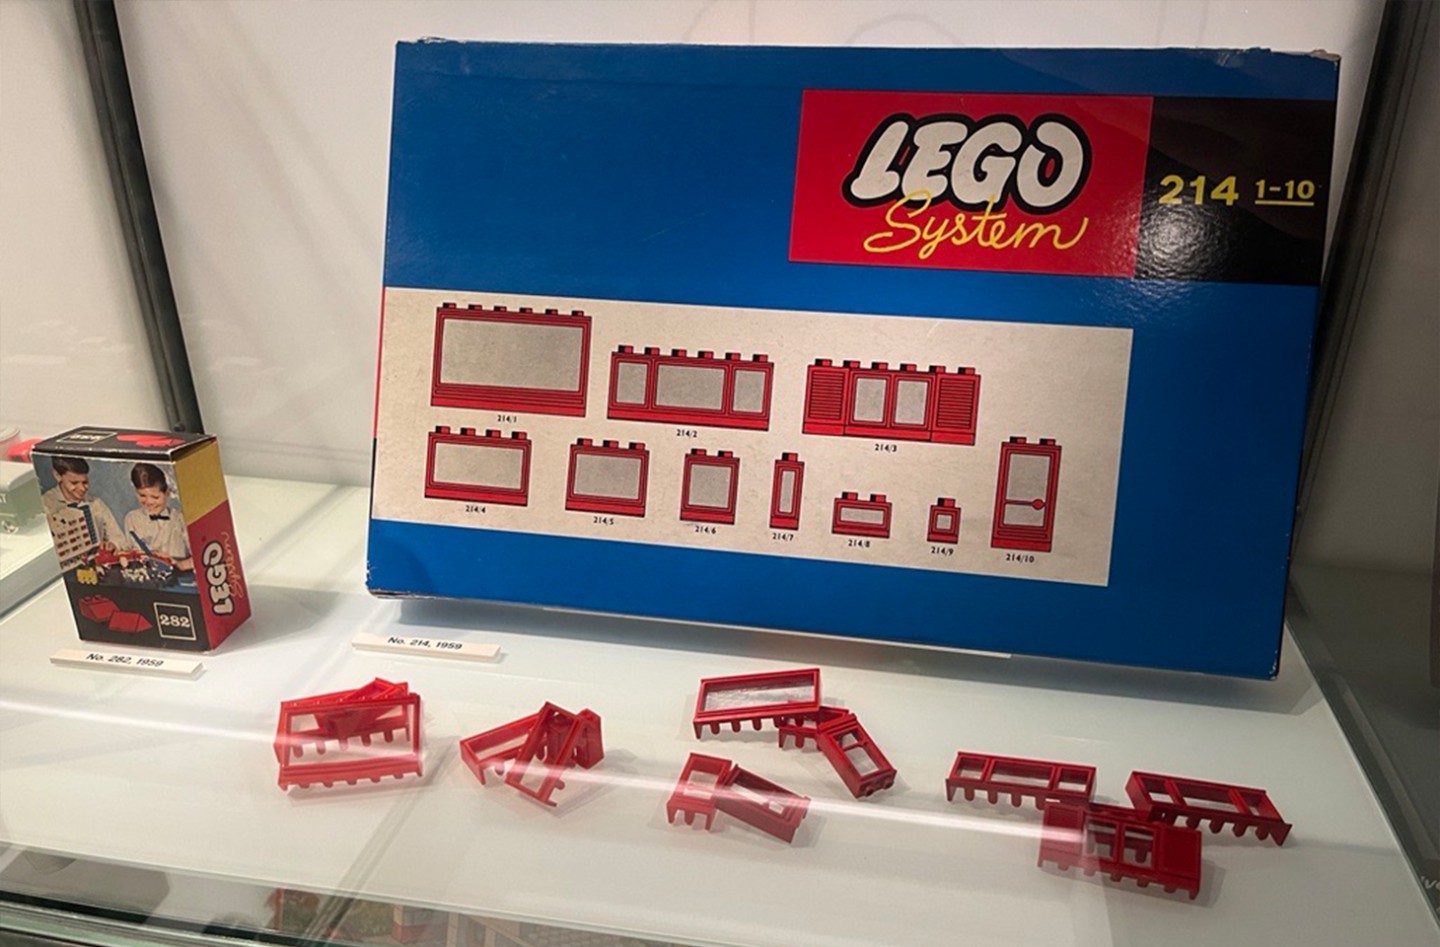 Legoland & Legohouse